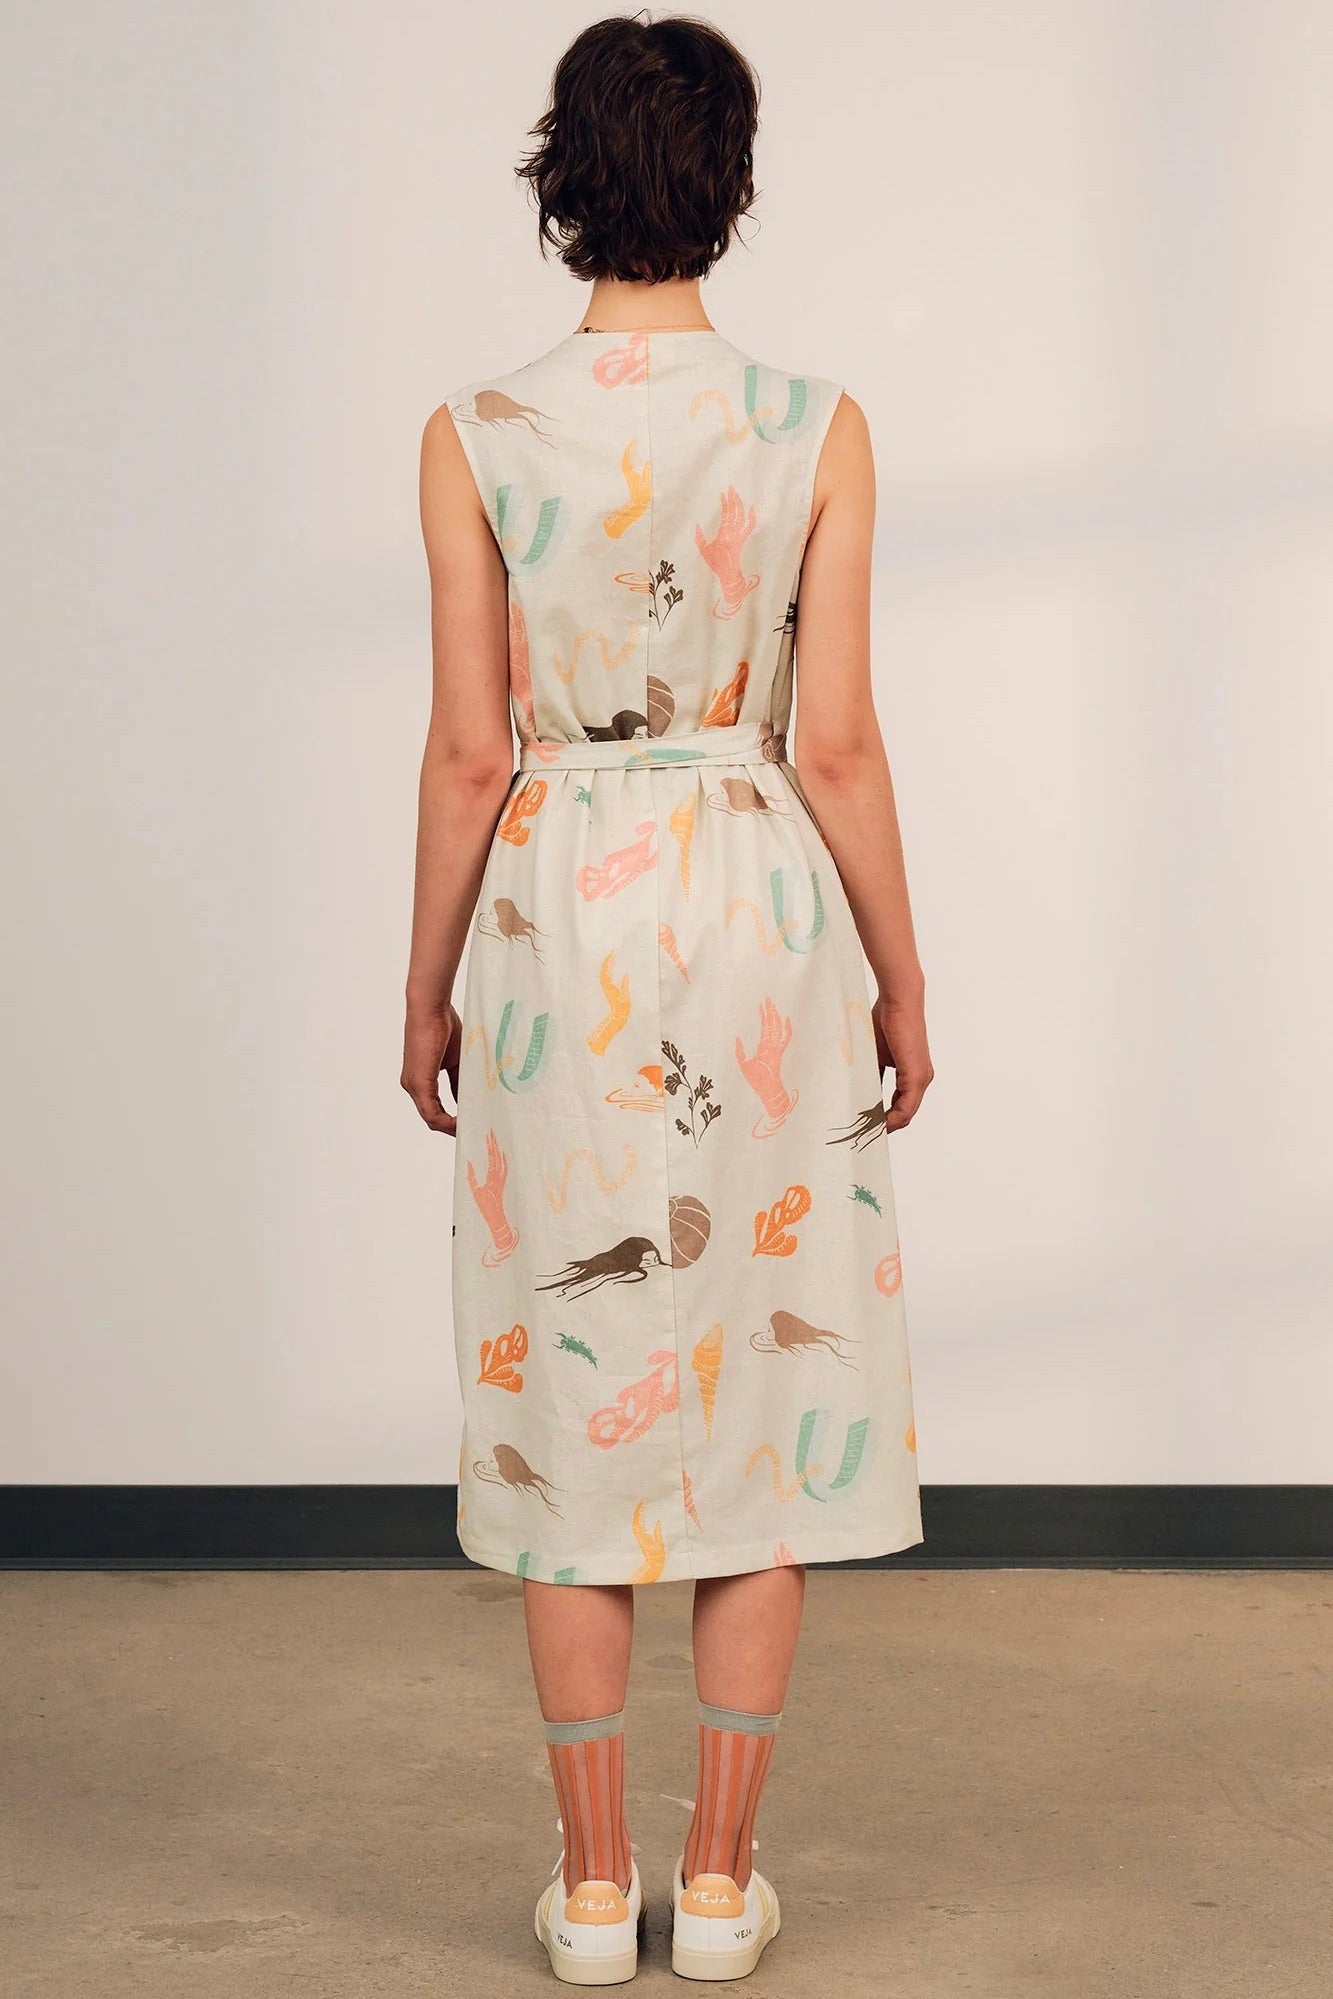 Jennifer Glasgow: Uma Wraparound Dress